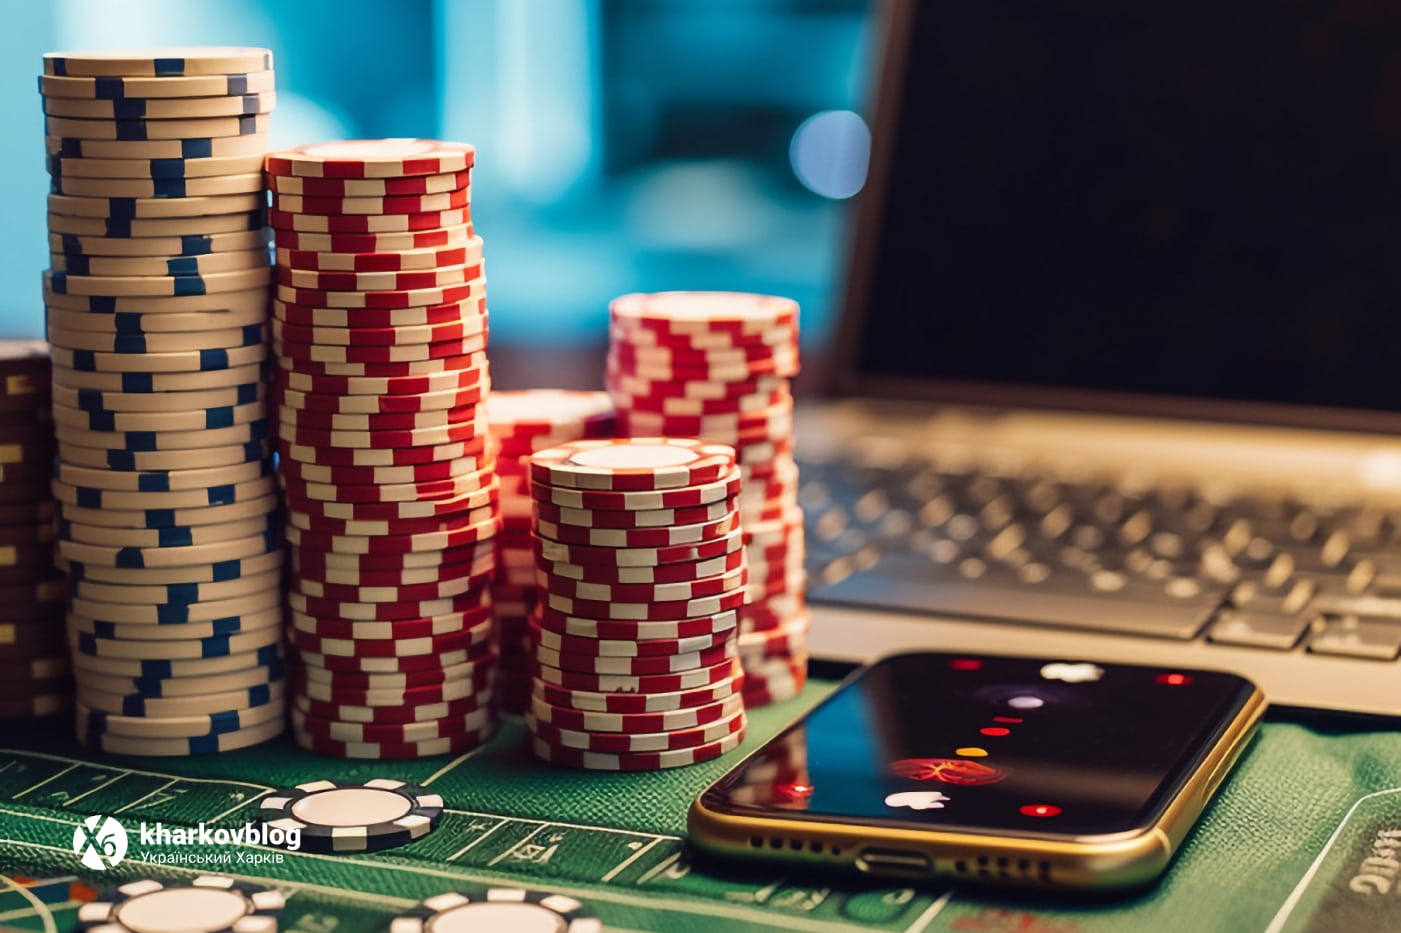 Вулкан 777 – как пополнить депозит и вывести средства, правила онлайн казино